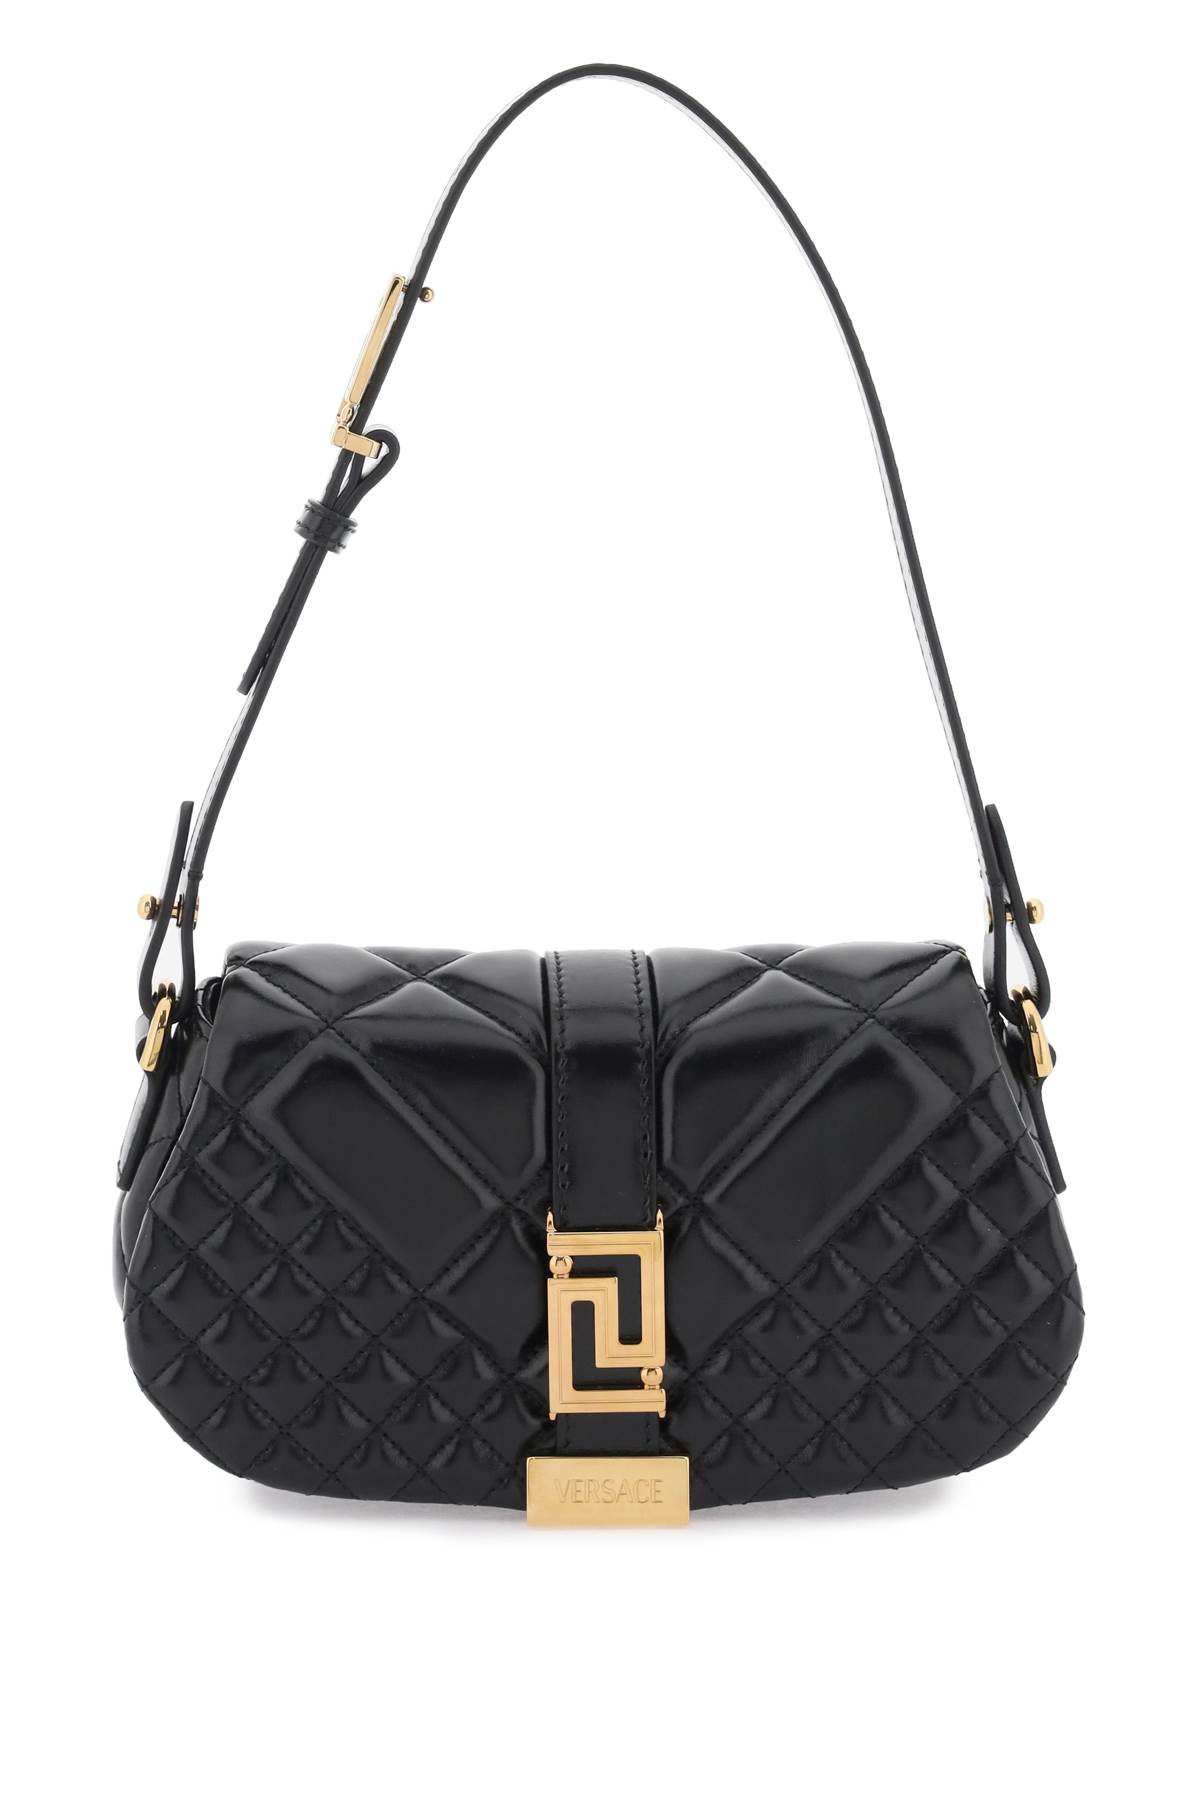 Versace Greca Goddess Mini Handbag In Black  Gold (black)